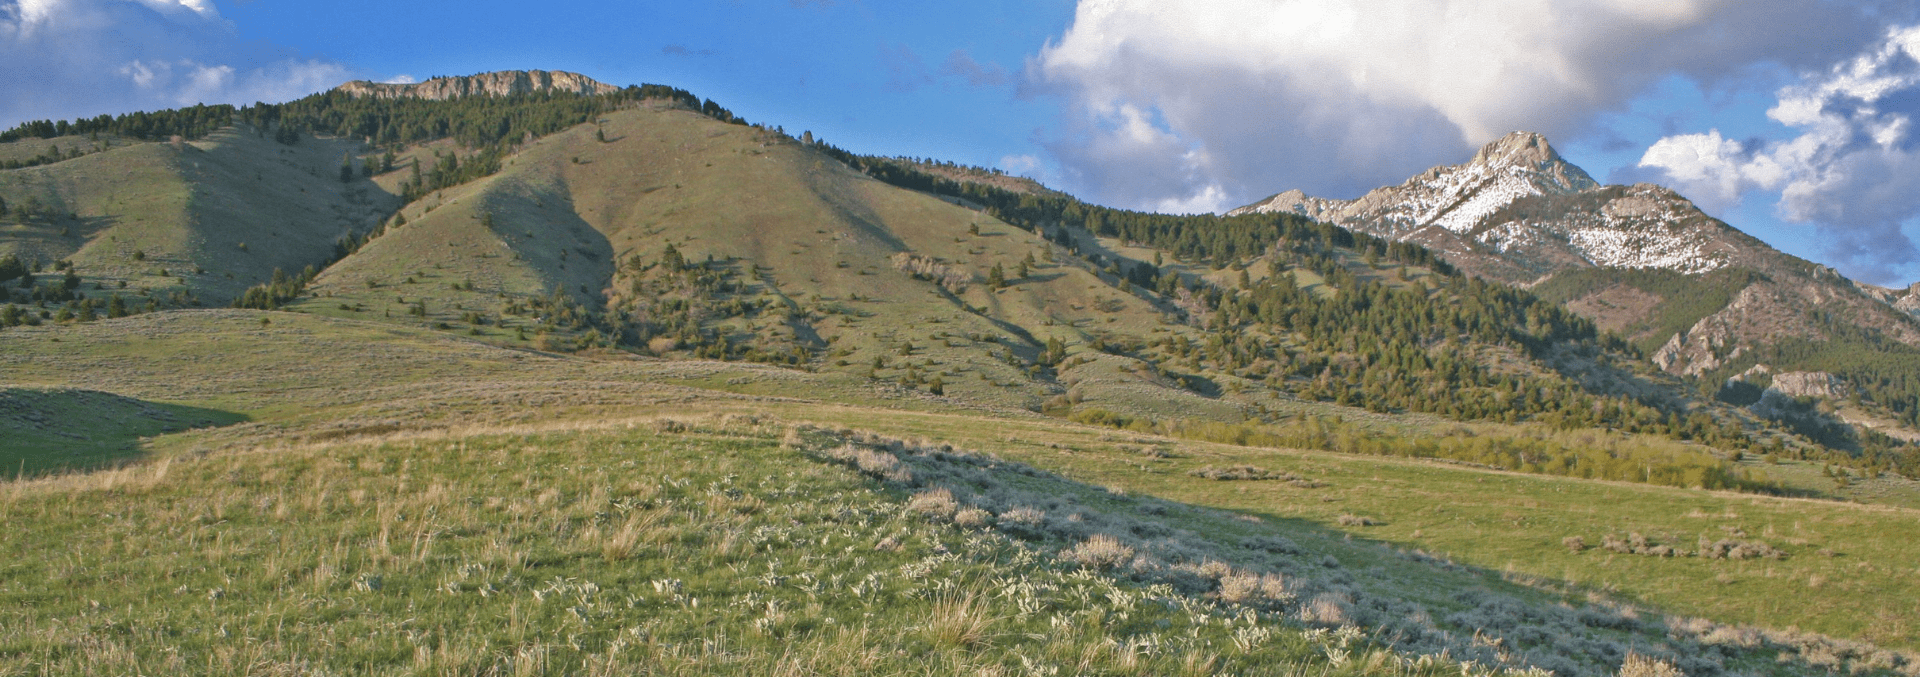 Belgrade Montana Land For Sale Corbly Mountain Ranch